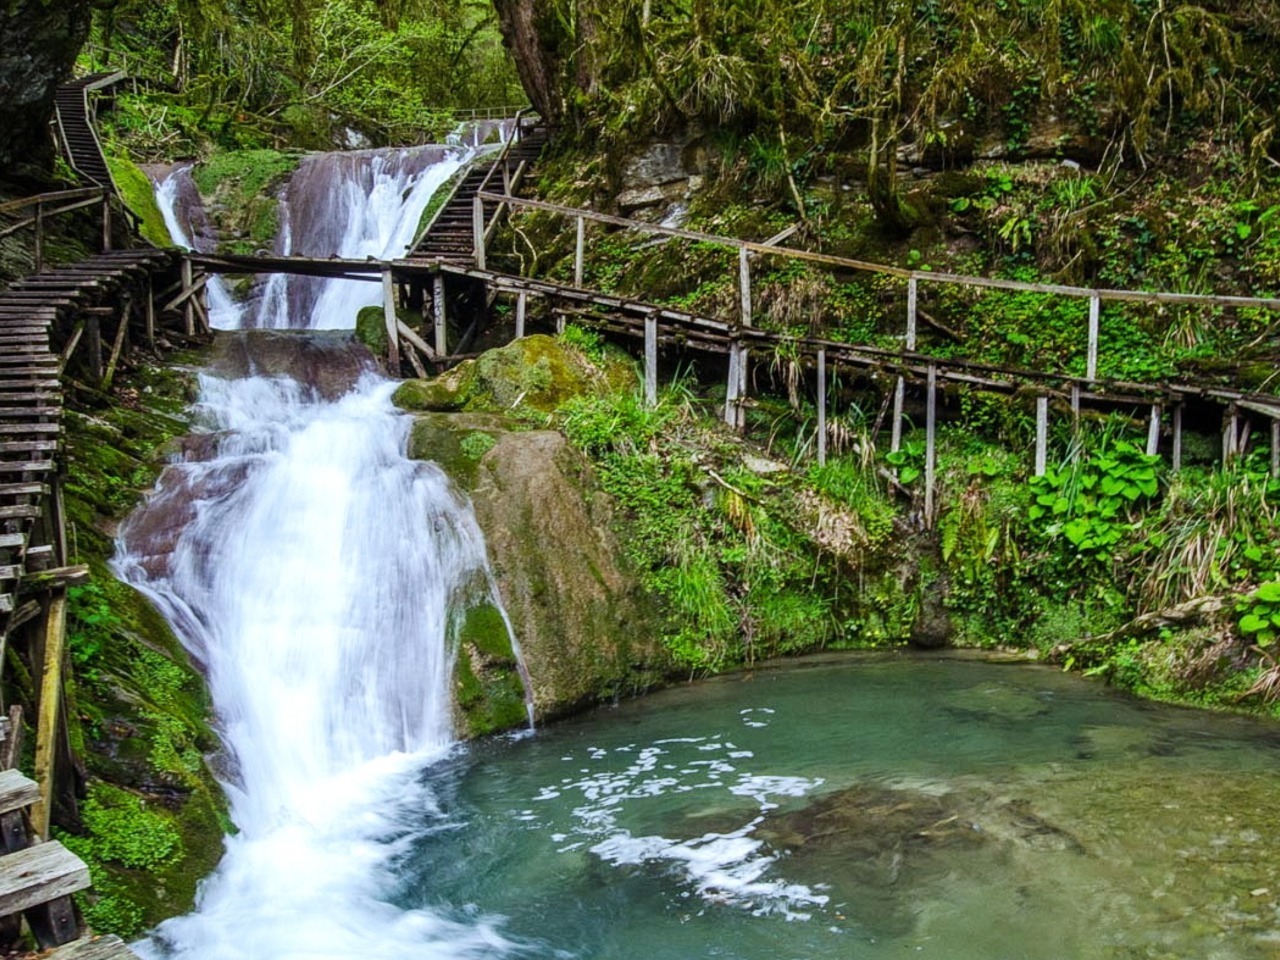 Долина водопадов. Ущелье Джегош 33 водопада. Парк 33 водопада в Сочи. Экскурсия 33 водопада Сочи. 33 Водопада Абхазия.